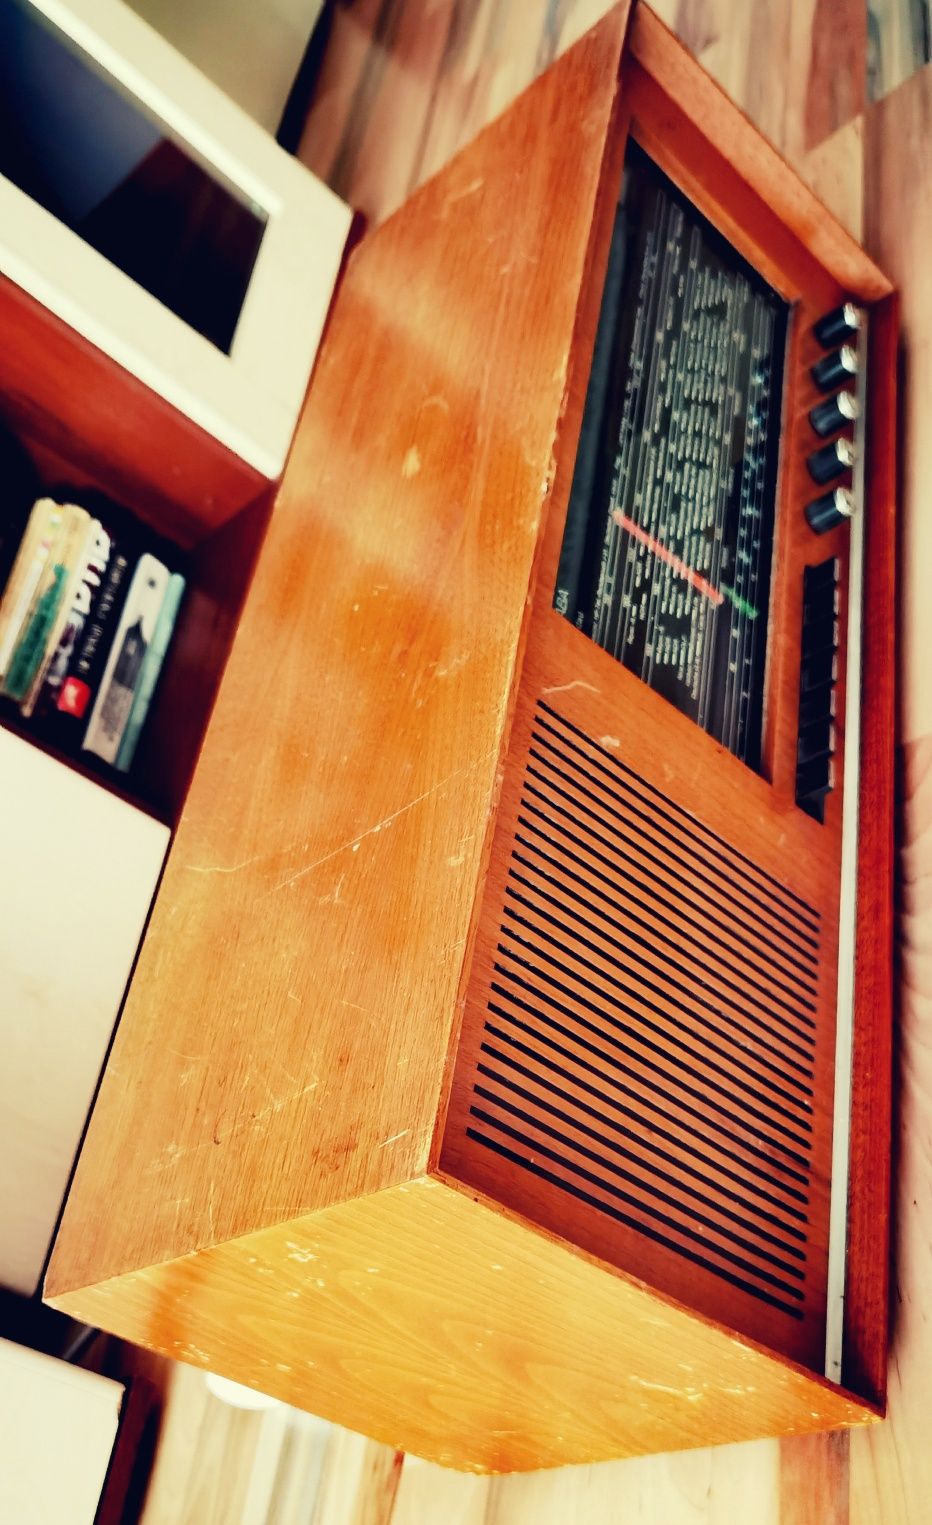 Radio vechi pe lămpi Saba Lindau E retro vintage de colecție anii 60